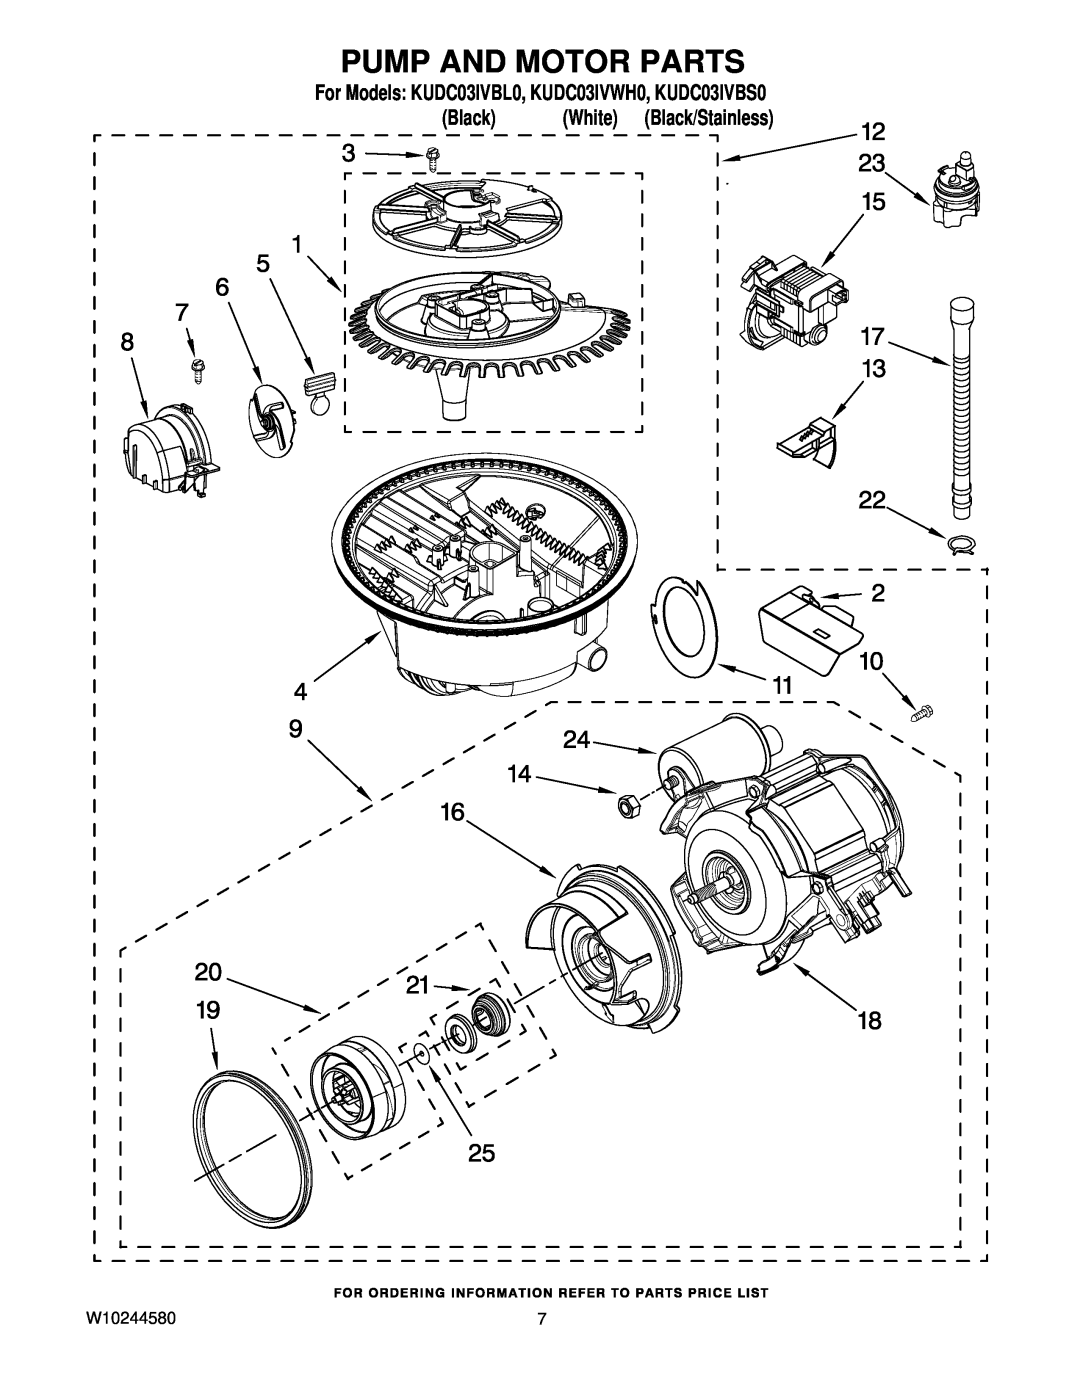 KitchenAid manual Pump And Motor Parts, For Models KUDC03IVBL0, KUDC03IVWH0, KUDC03IVBS0, White, Black/Stainless 